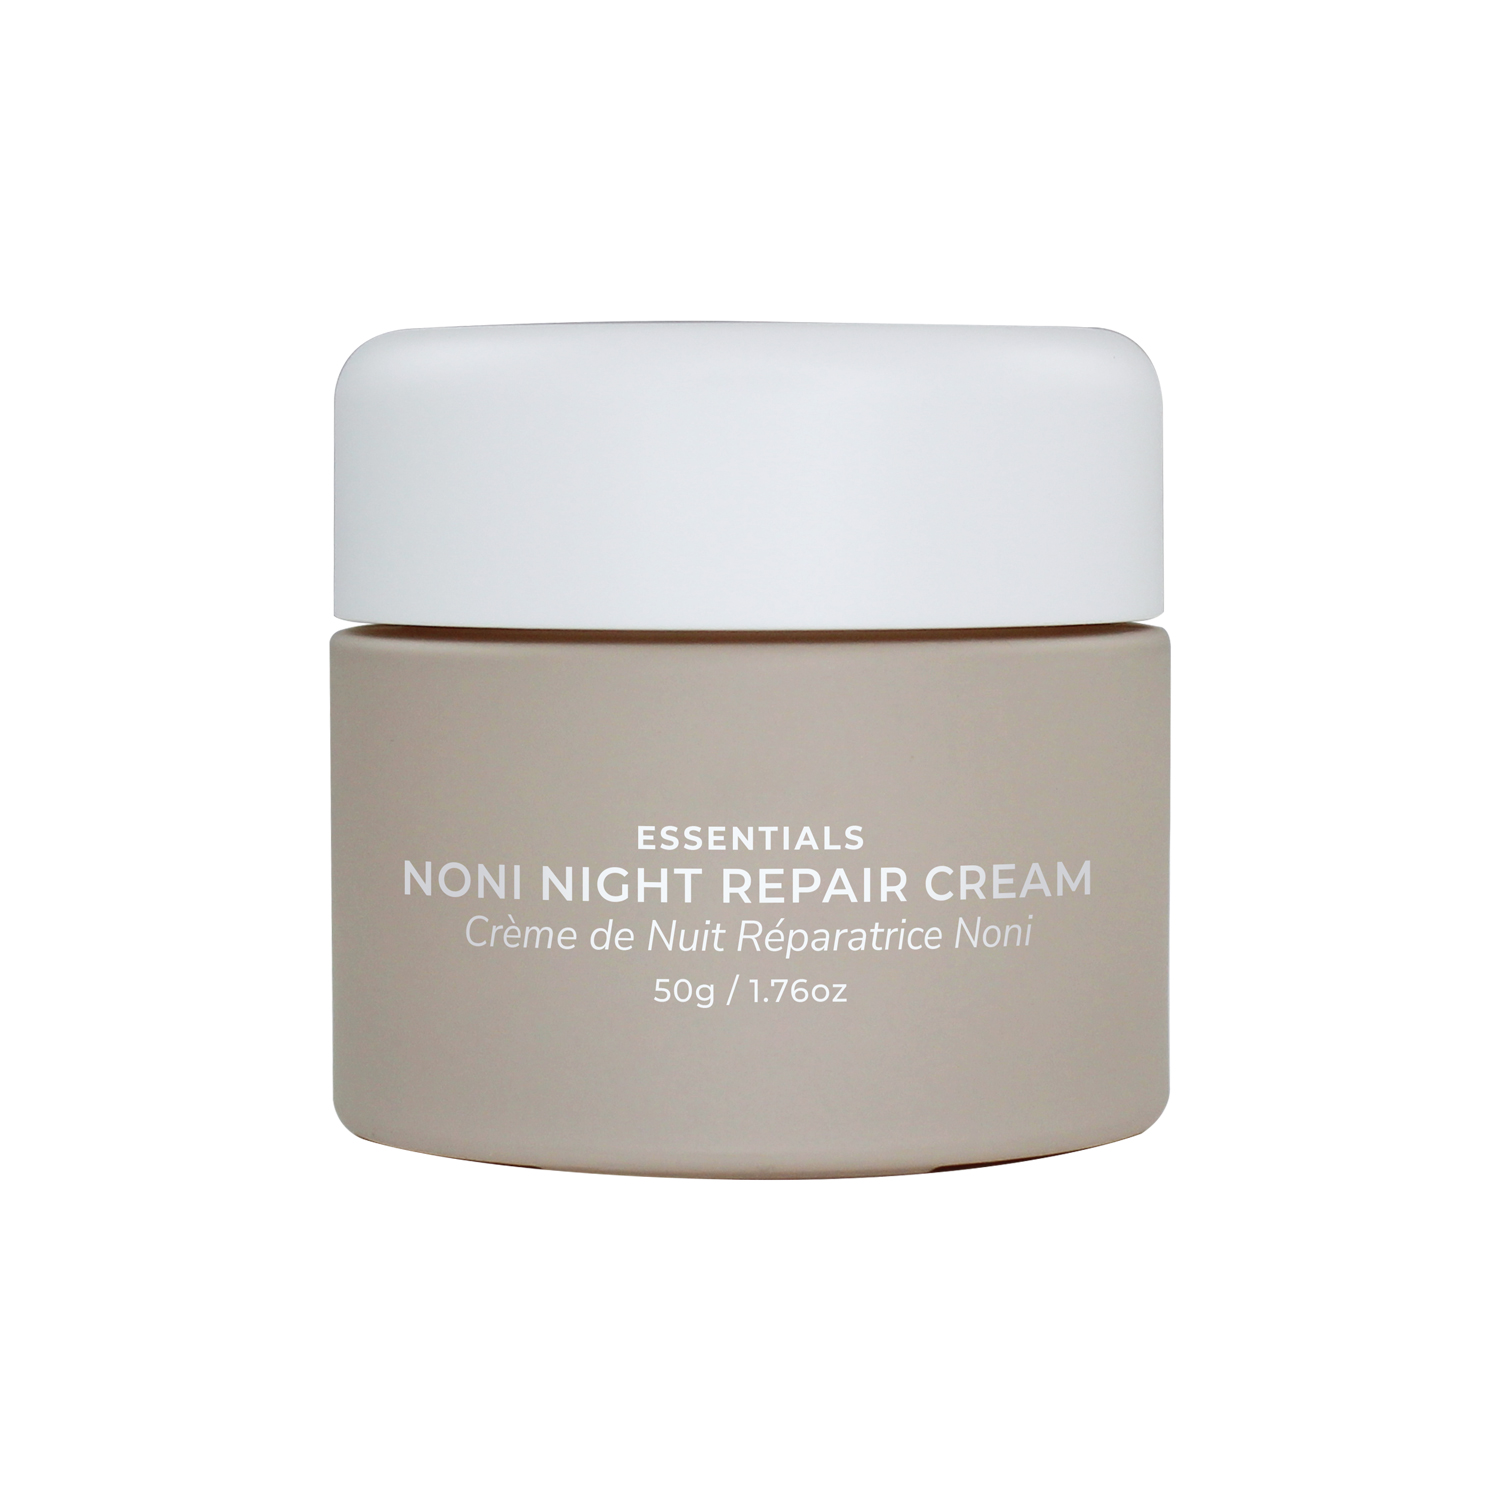 Noni-Night-Repair-Cream-2